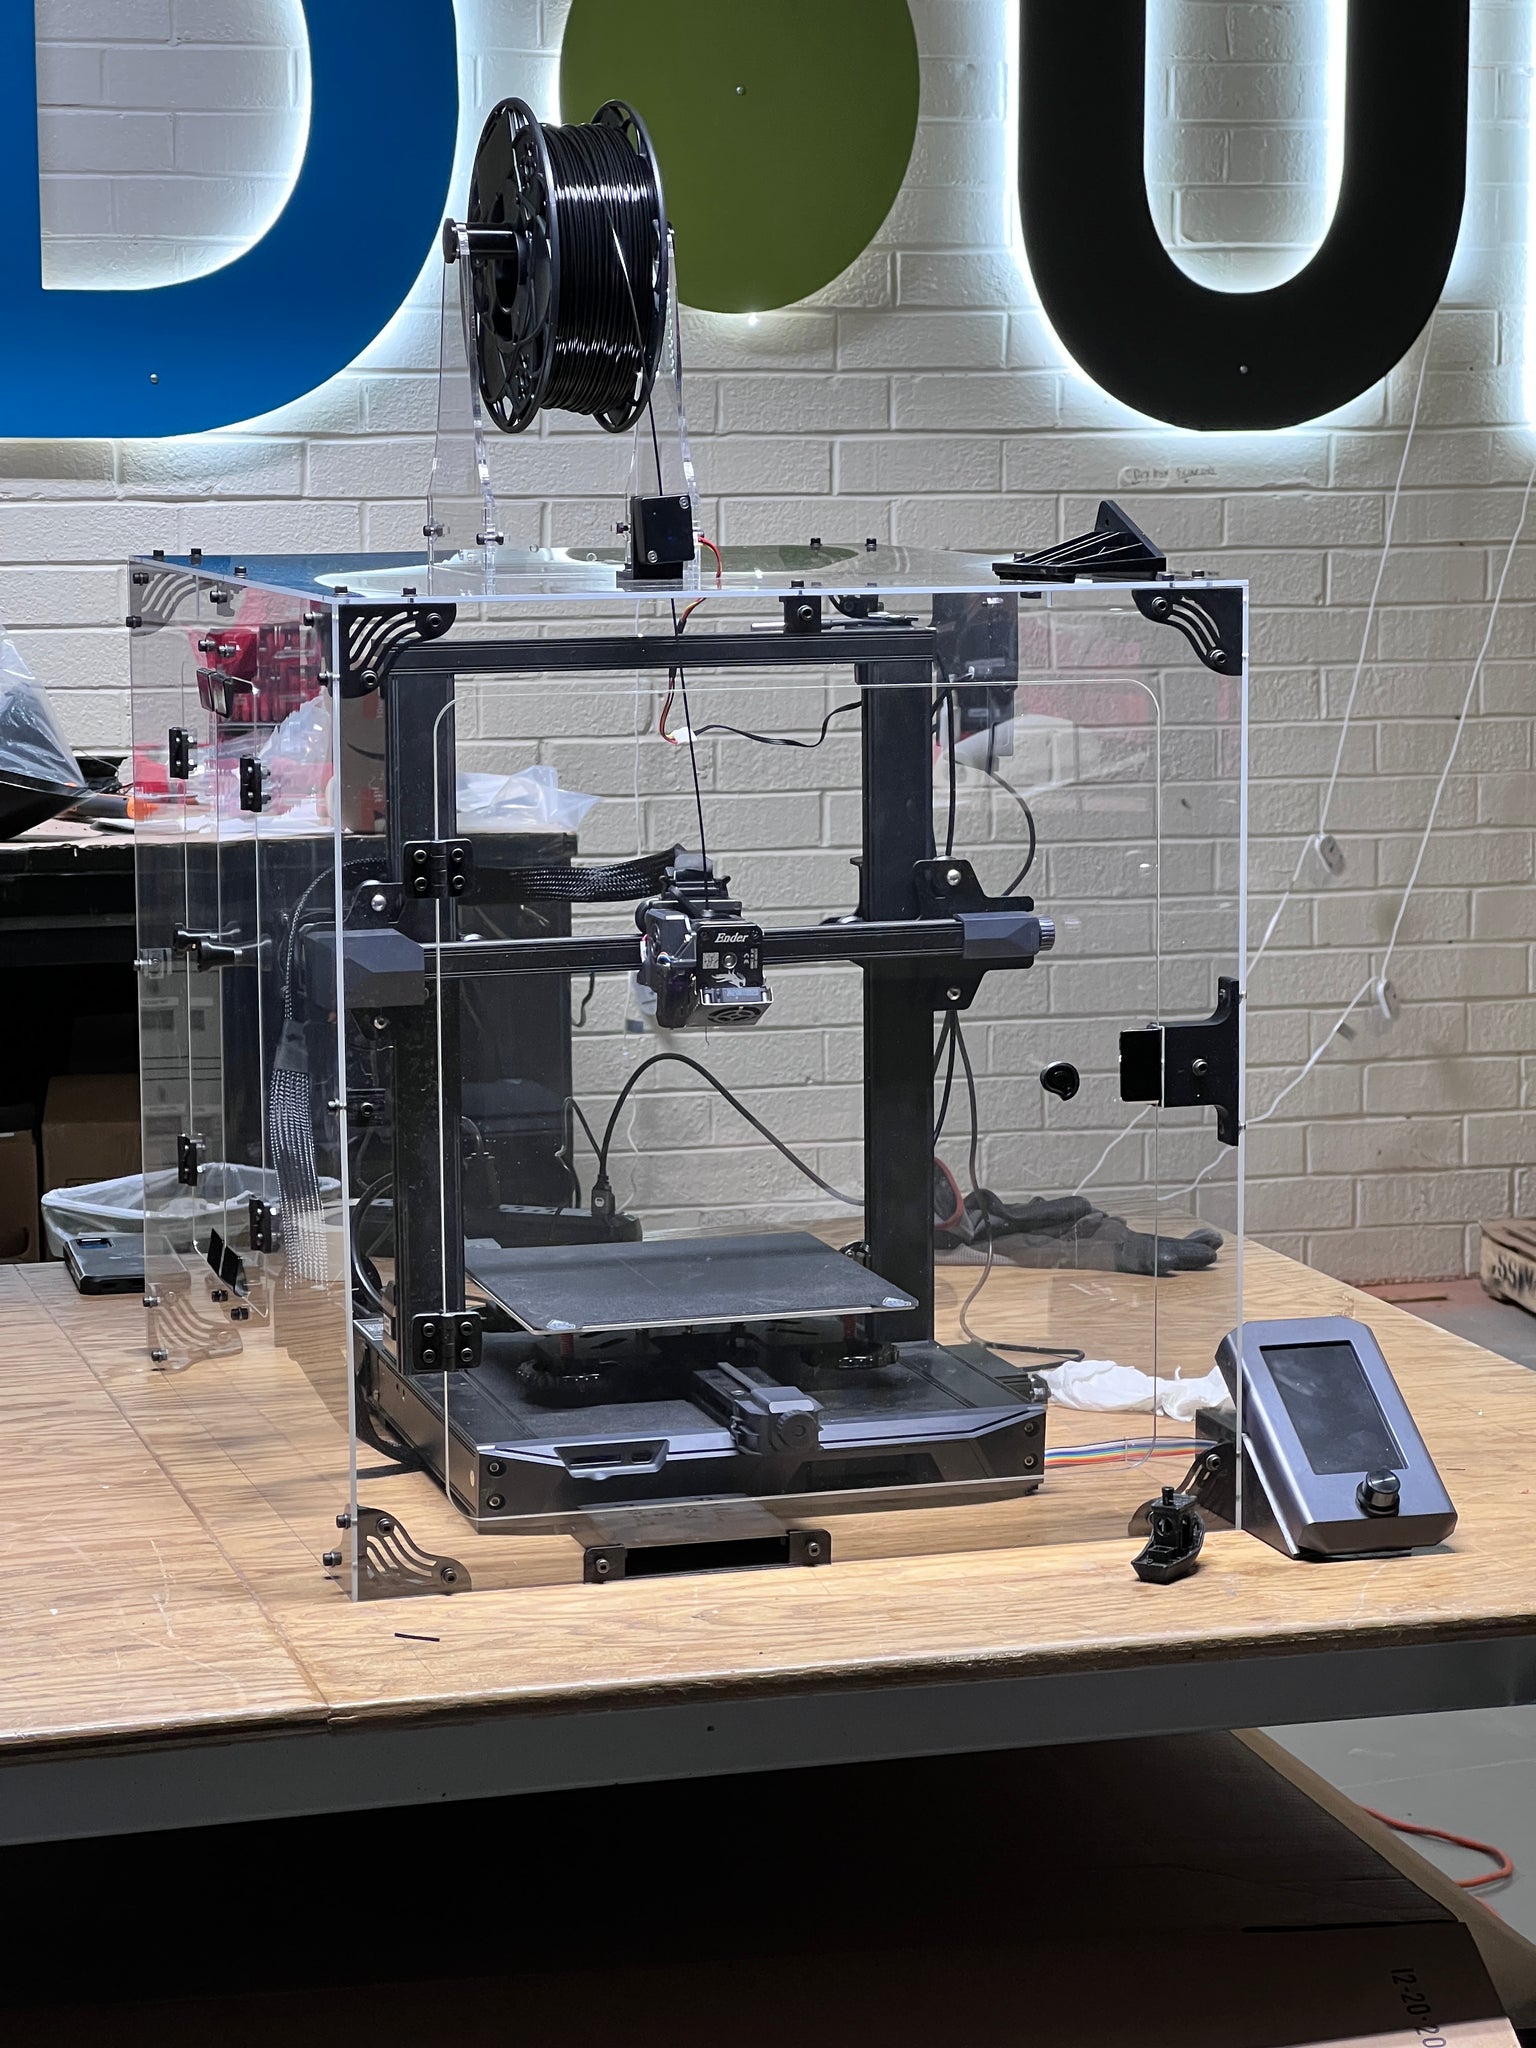 Buy Creality Ender-3 V2 Neo 3D Printer Kit